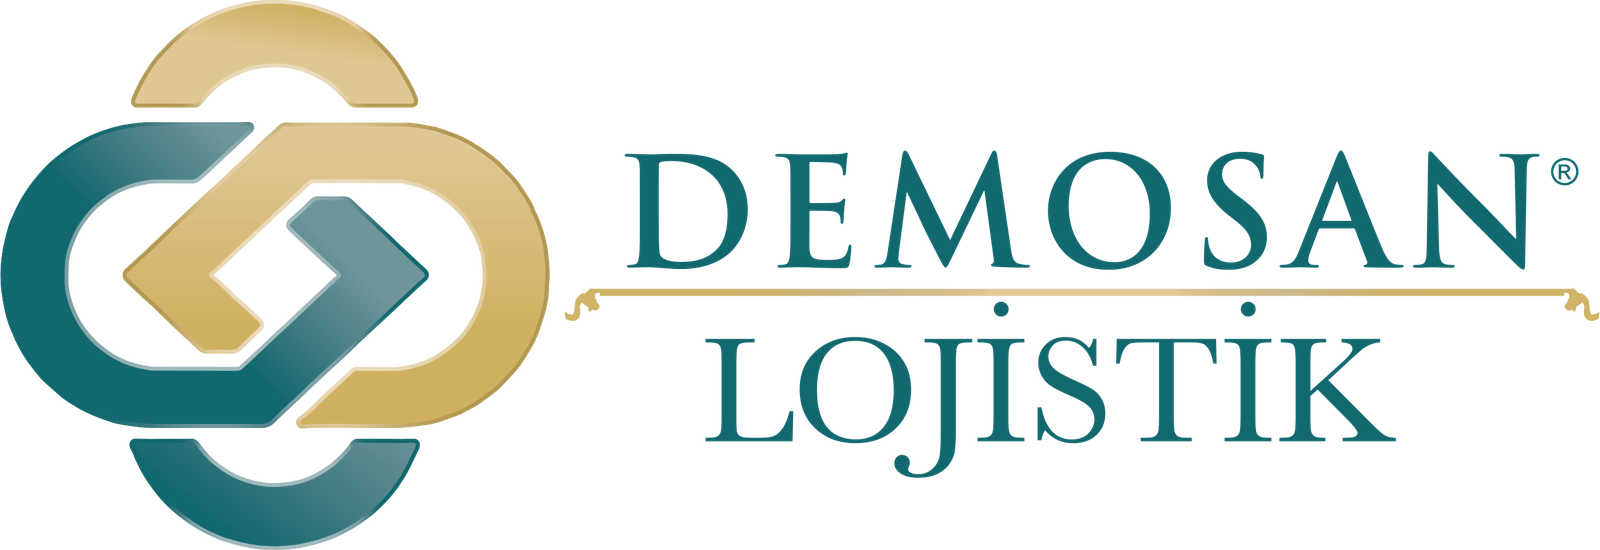 Demosan Lojistik - Uluslarası Nakliye ve Lojistik Hizmetleri